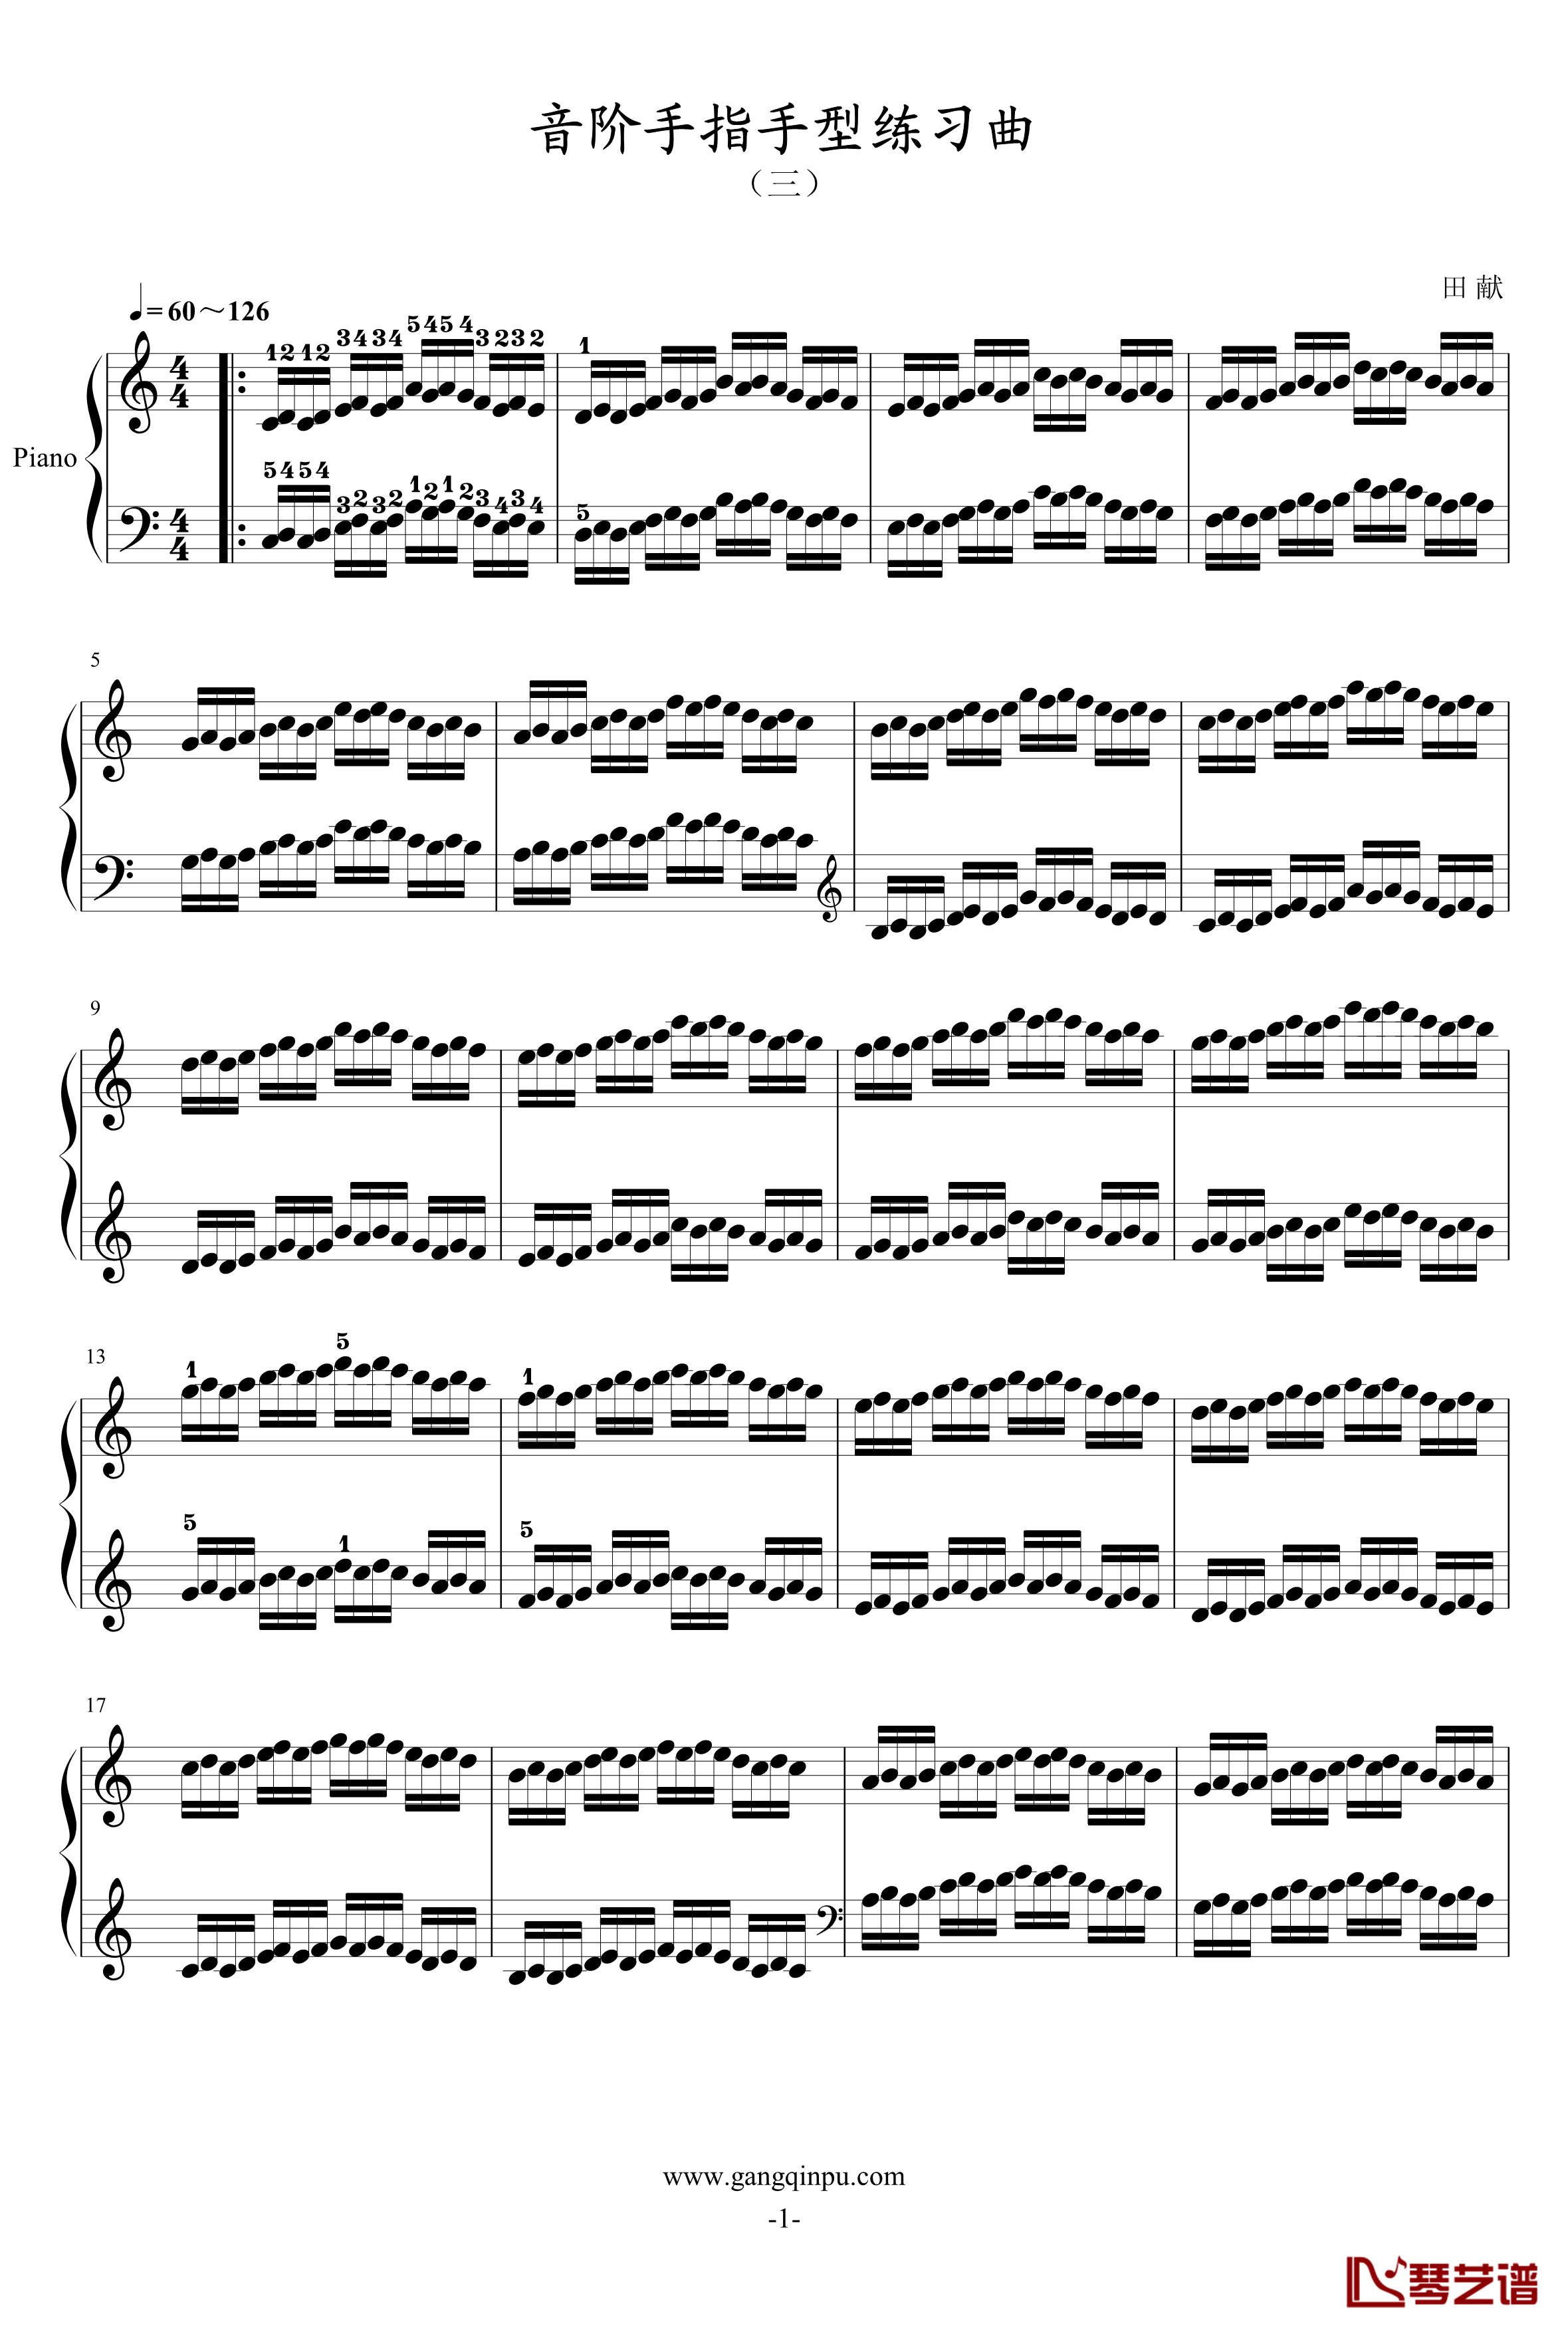 音阶手指手型练习曲钢琴谱-三-田献1